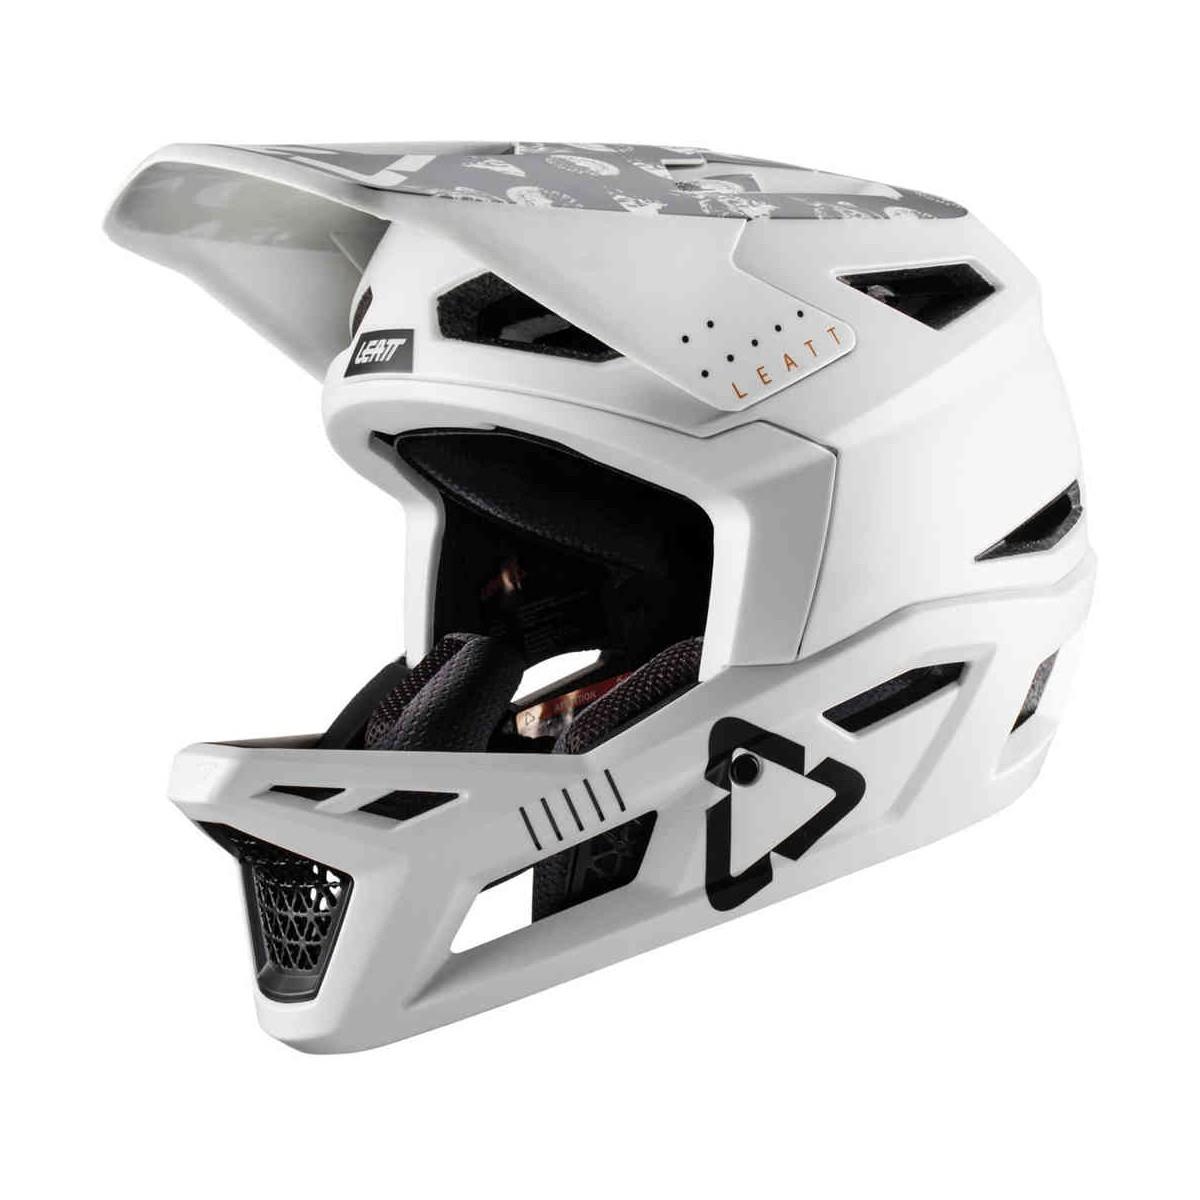 Gravity 4.0 Full Face MTB Helmet White Size M (57-58cm)